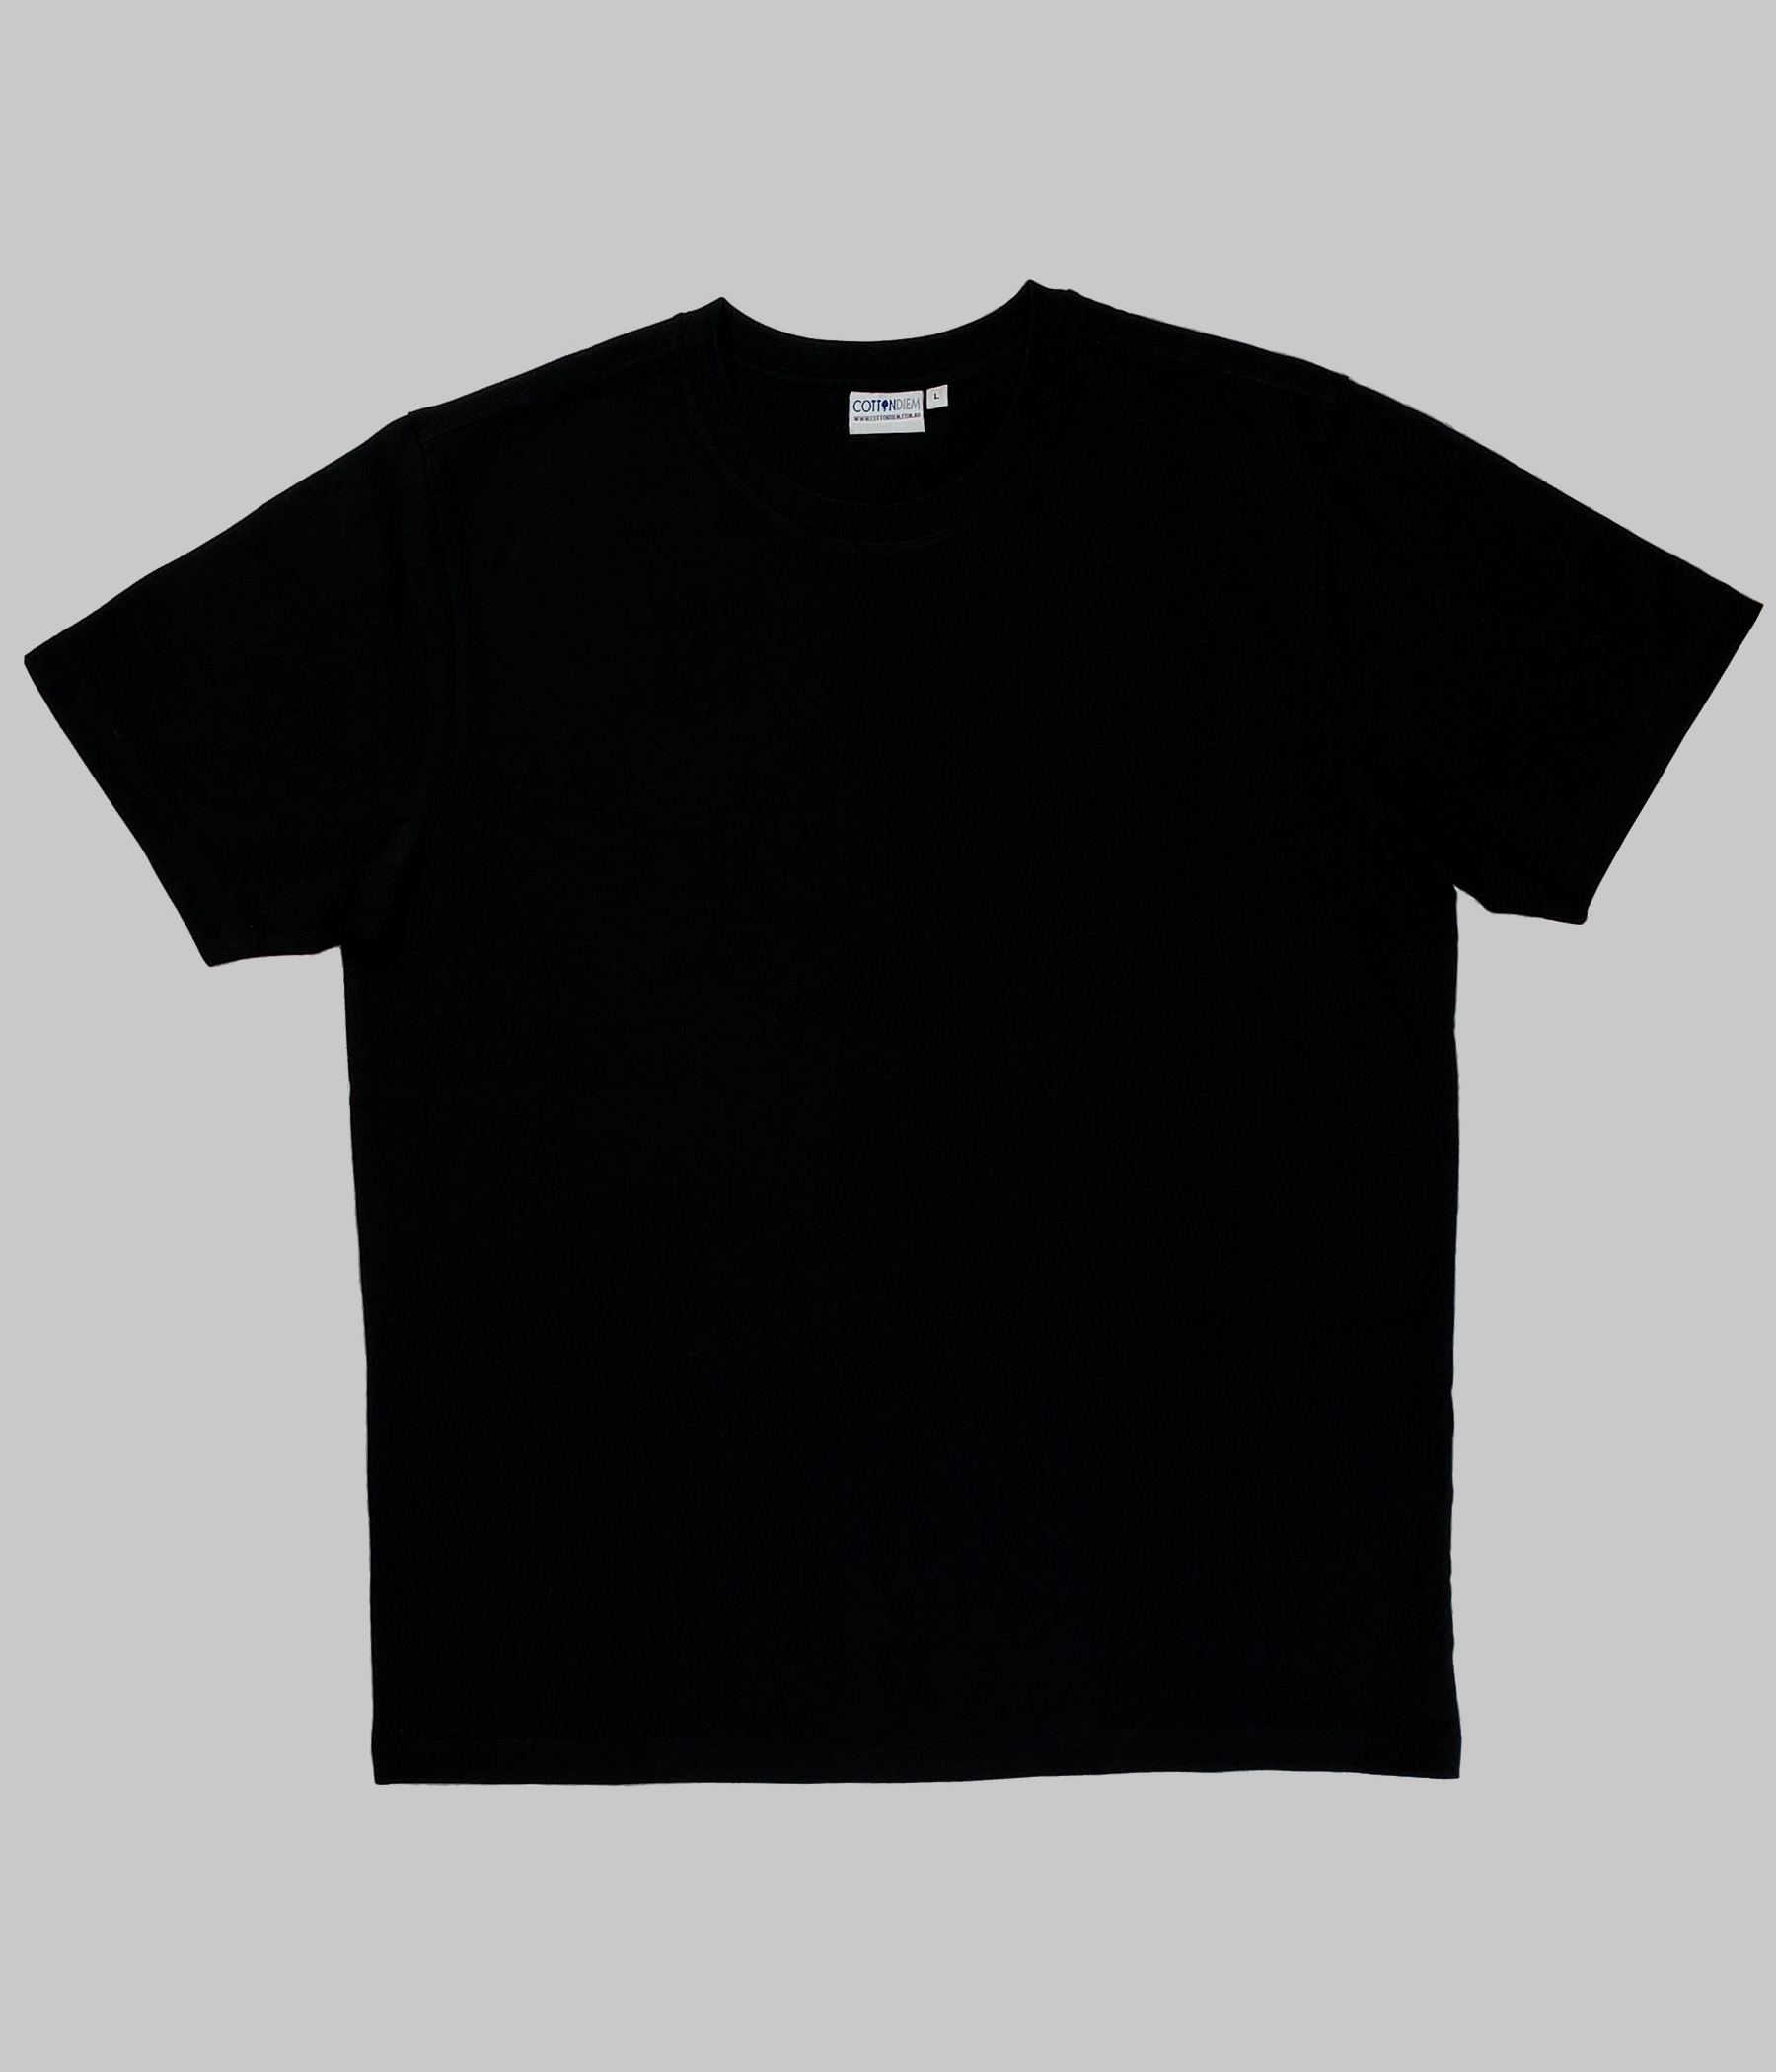 Blank black t-shirts - 200 GSM